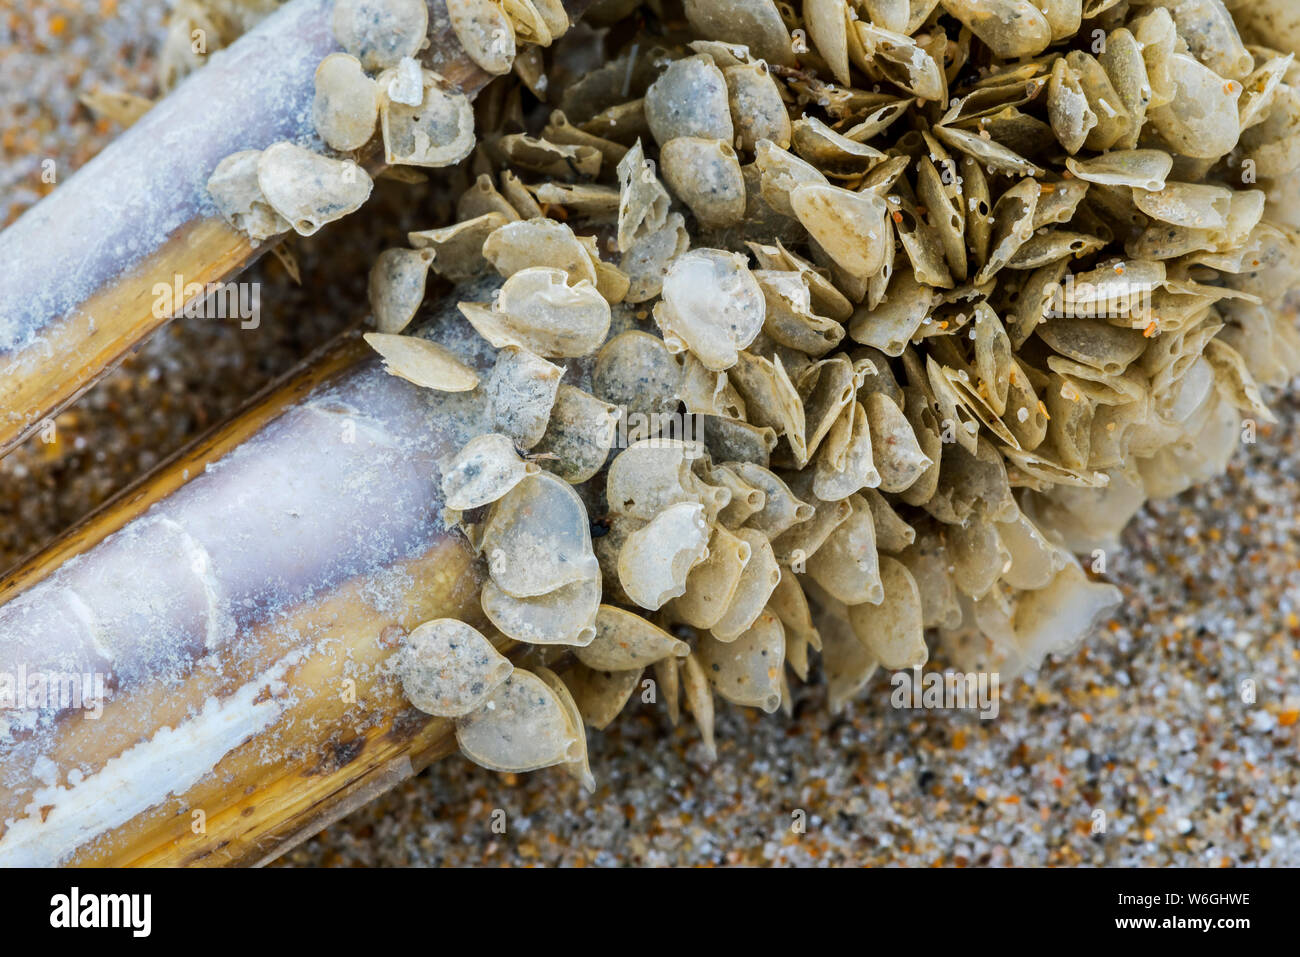 Ei Fälle/Eier von verrechnet Hund wellhornschnecken (Tritia reticulata / Nassarius reticulatus/Hinia reticulata), marine gastropode Molluske, an Land am Strand gespült Stockfoto